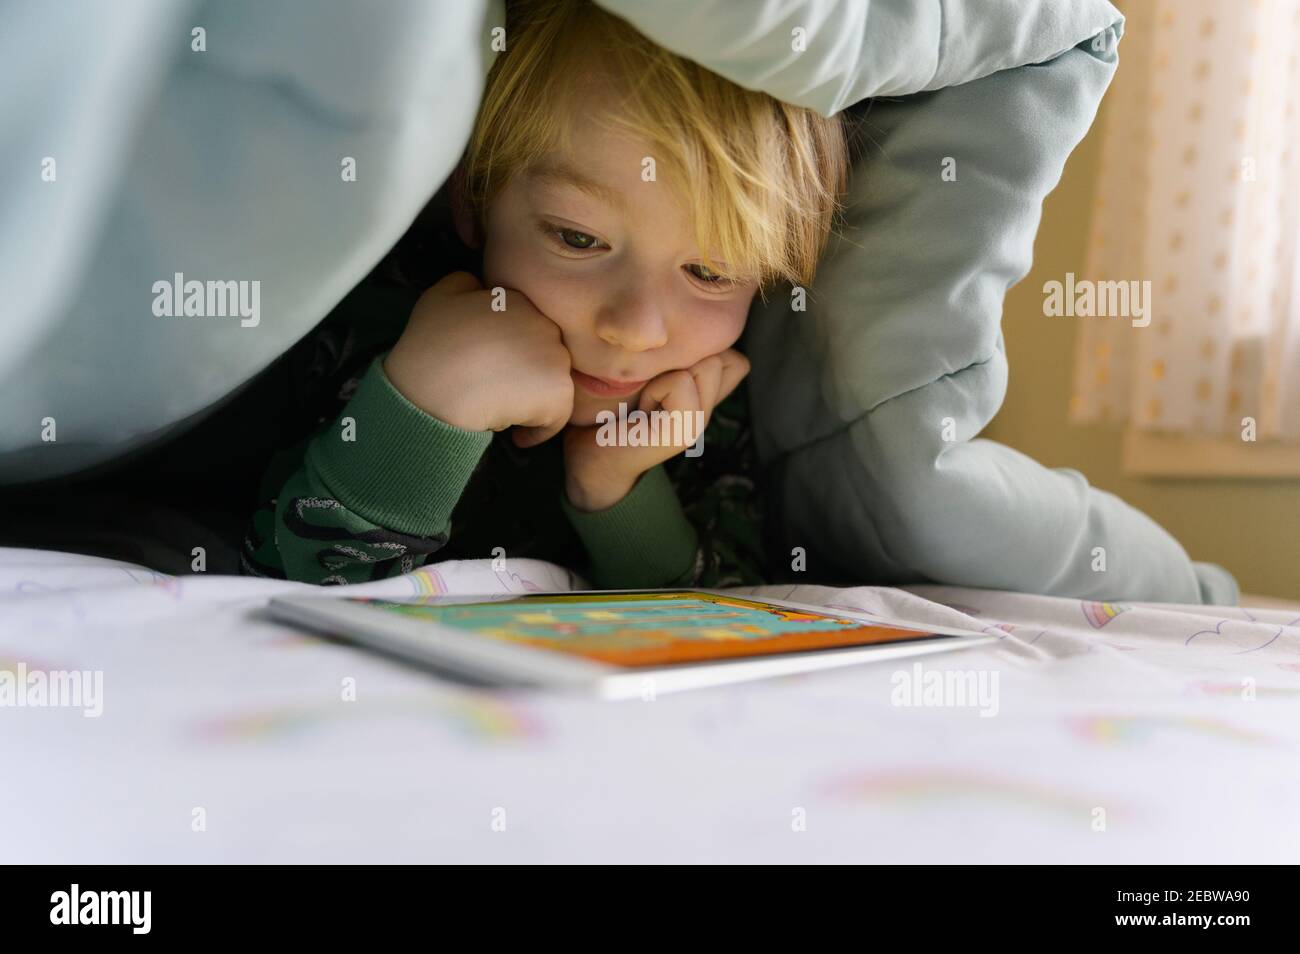 Garçon (6-7) sur le lit regardant la tablette numérique Banque D'Images